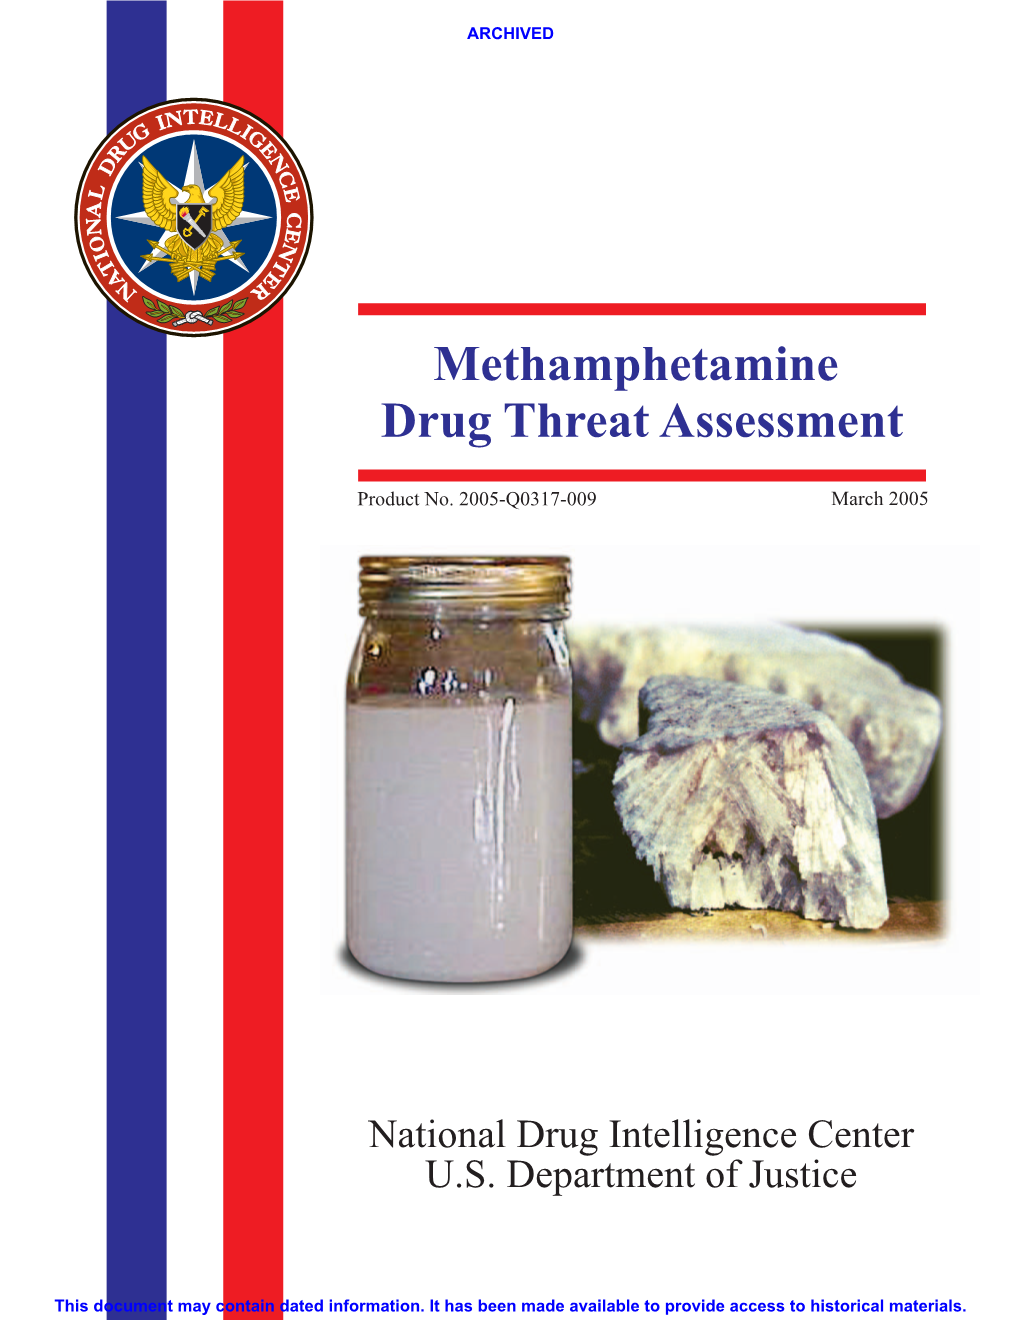 Methamphetamine Drug Threat Assessment